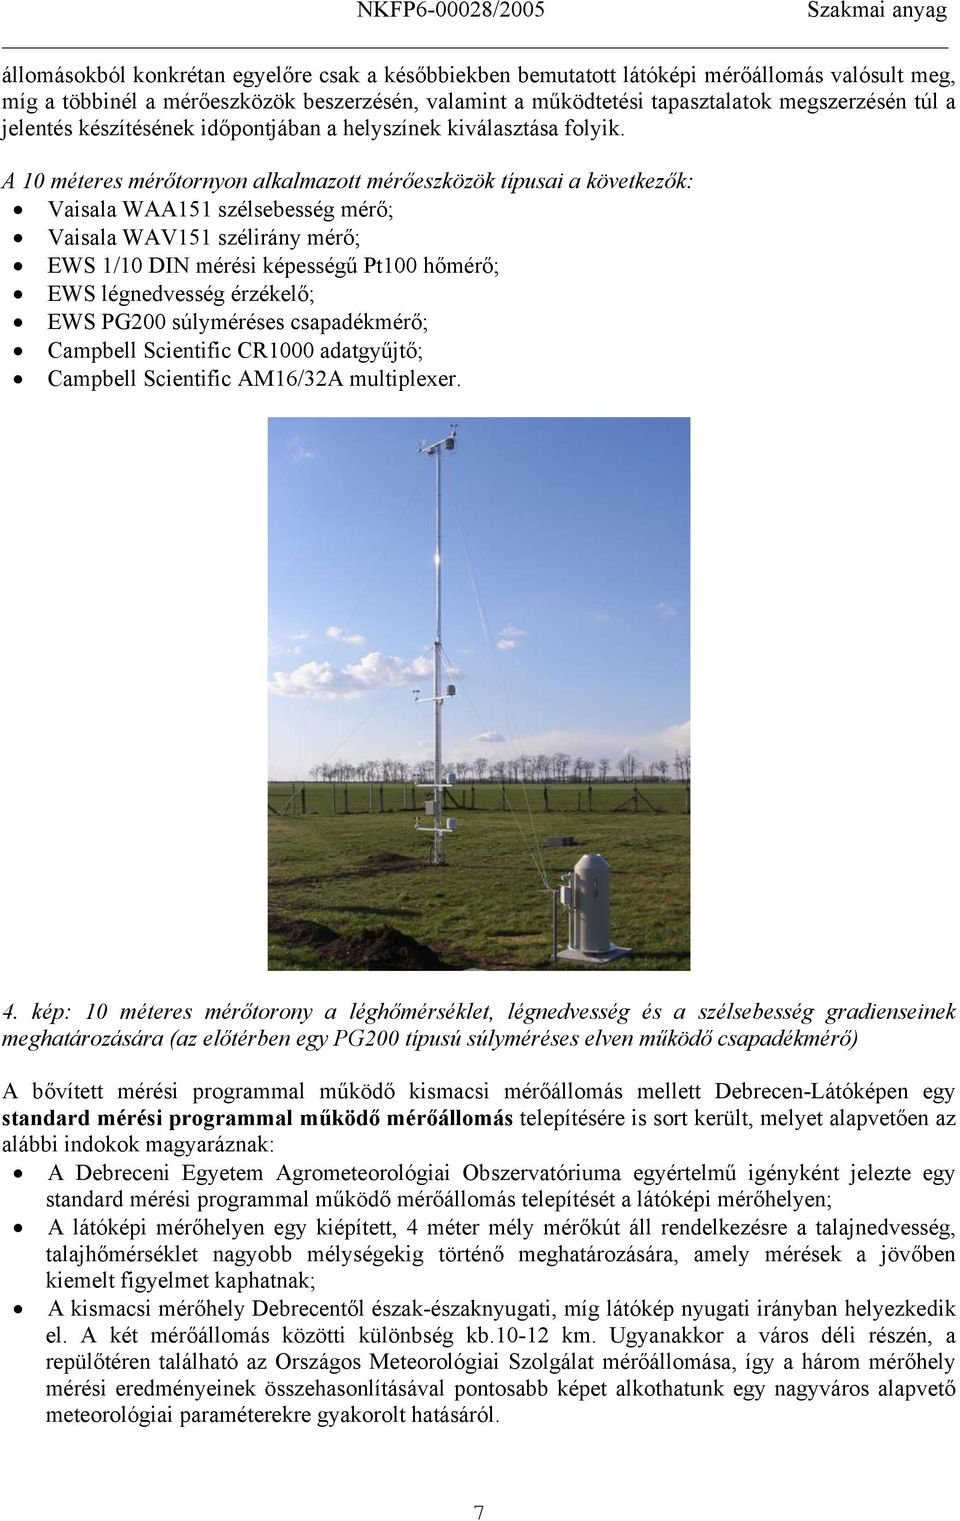 A 10 méteres mérőtornyon alkalmazott mérőeszközök típusa a következők: Vasala WAA151 szélsebesség mérő; Vasala WAV151 szélrány mérő; EWS 1/10 DIN mérés képességű Pt100 hőmérő; EWS légnedvesség